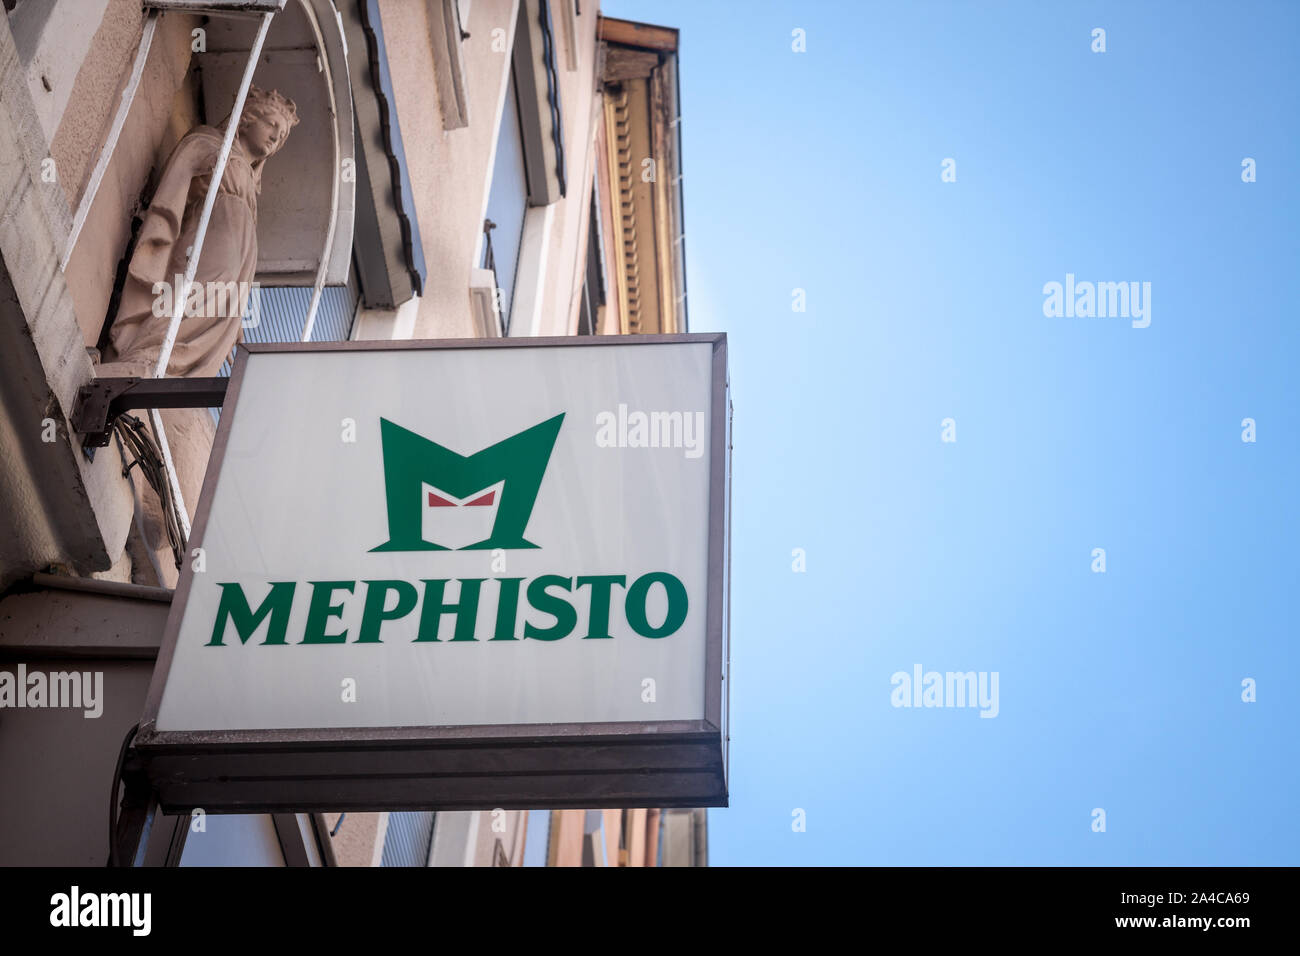 Lione, Francia - Luglio 17, 2019: Mephisto Chausseur segno di fronte al loro negozio locale a Lione. Mephisto è un scarpe e calzature produttore e rivenditore Foto Stock